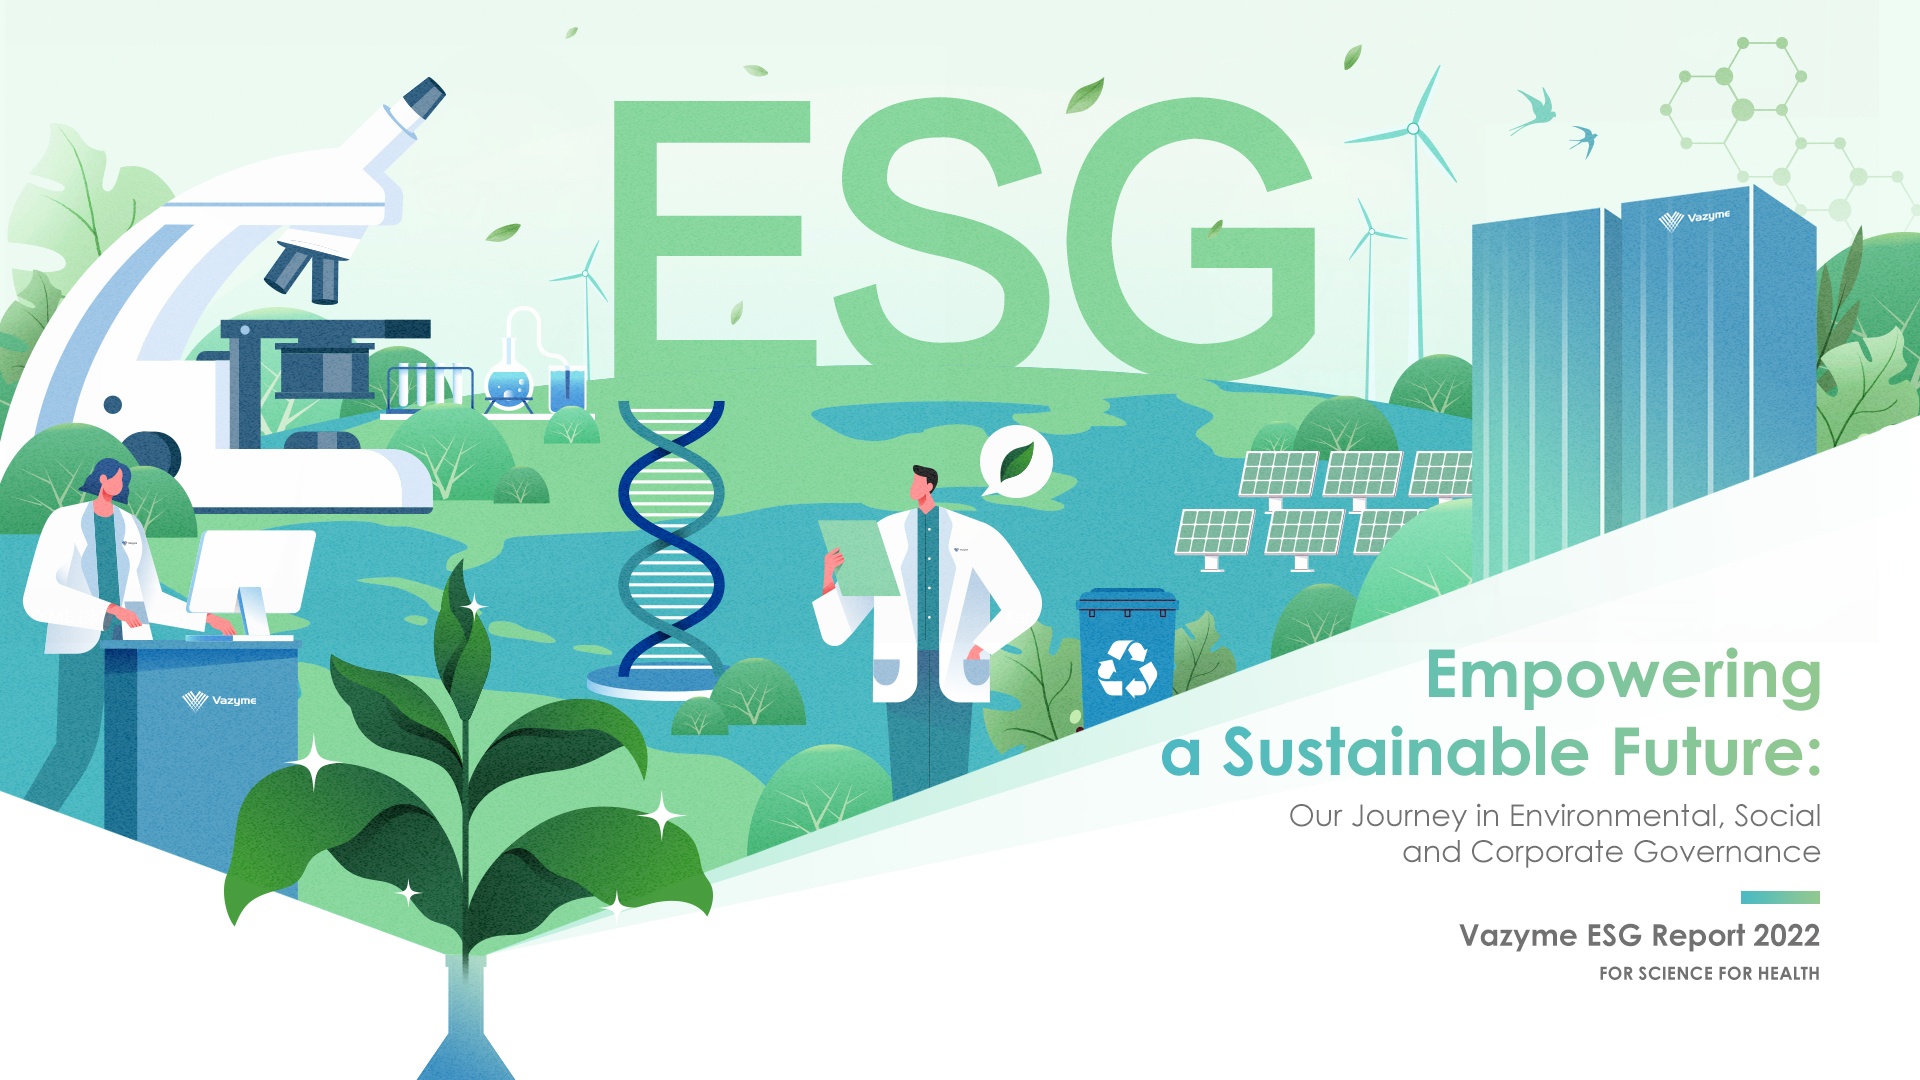 Vazyme သည် 2022 ESG အစီရင်ခံစာ- စဉ်ဆက်မပြတ်သောအနာဂတ်ကို မြှင့်တင်ပေးသည်။